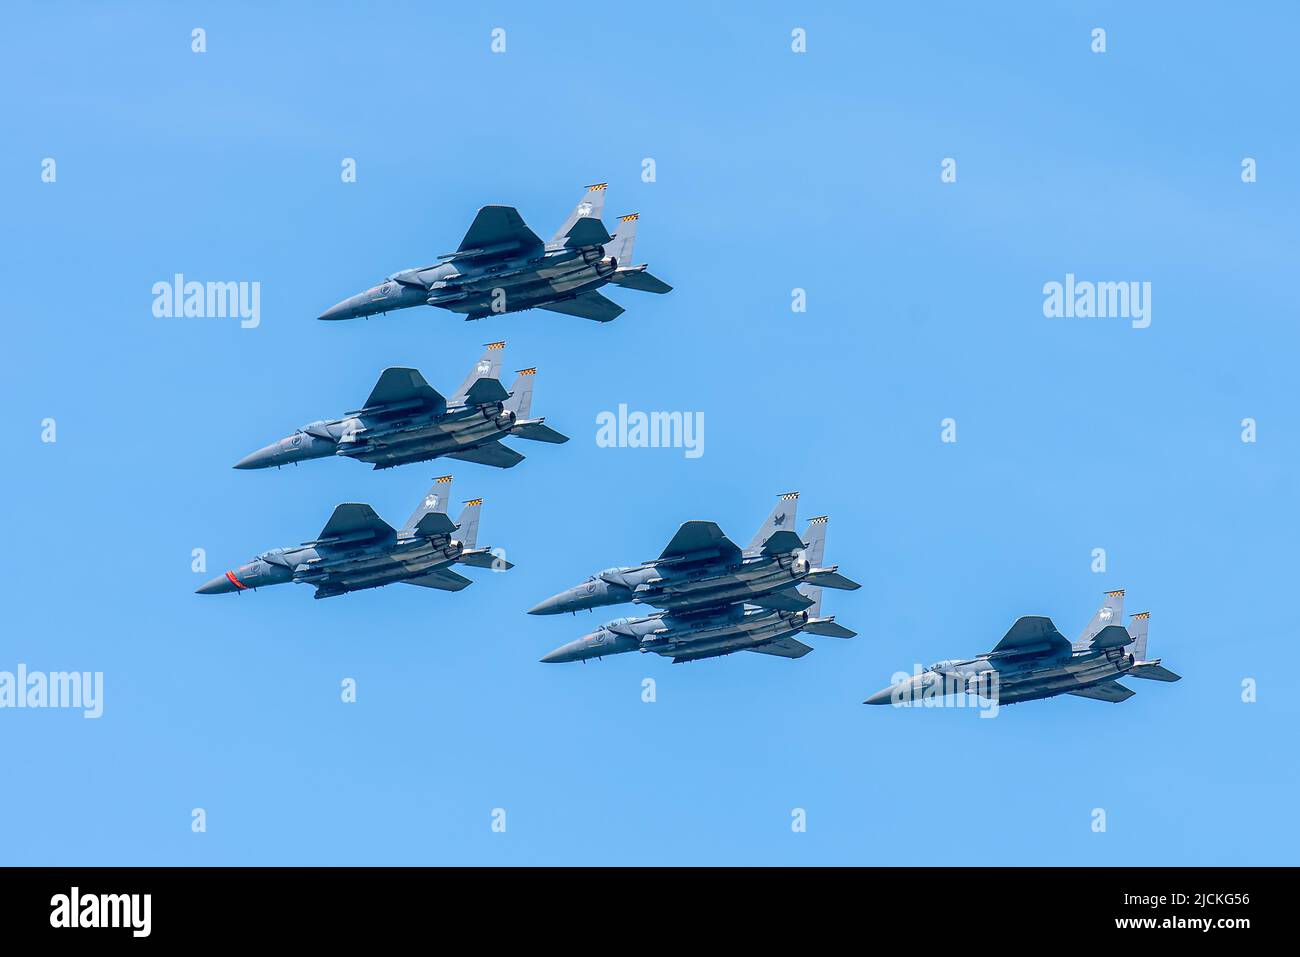 singapur, Singapur - 11. Aug 2018: HE F-15SG ist ein Allwetter-Kämpfer mit mehreren Rollen. Ausgestattet mit den neuesten technologischen Upgrades, ist es einer der Th Stockfoto